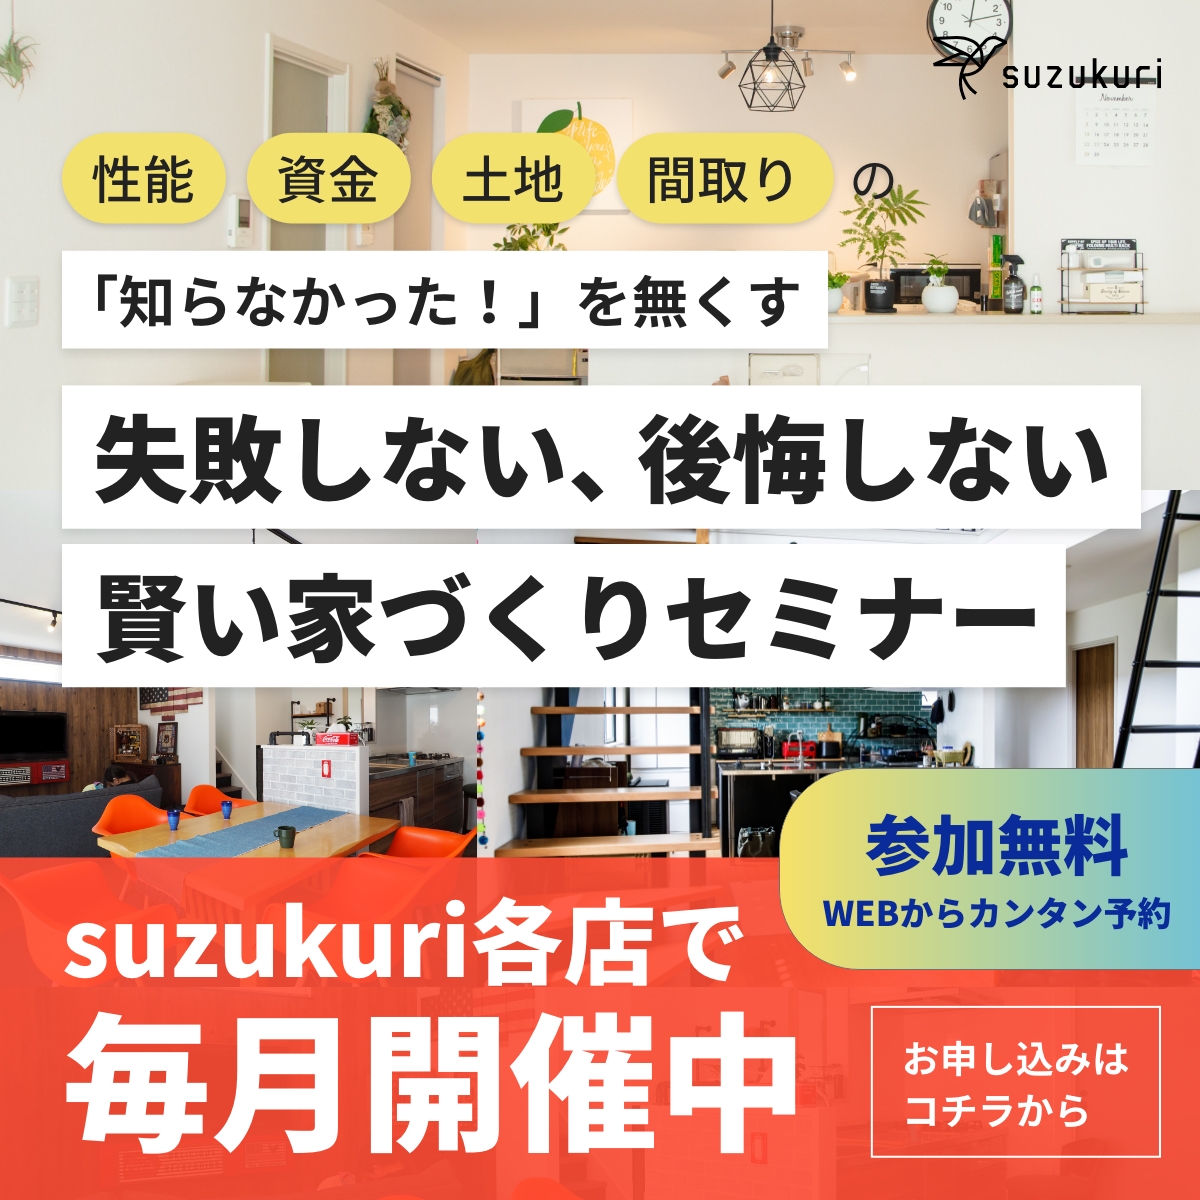 失敗しない、後悔しない賢い家づくりセミナー suzukuri各店で毎月開催中